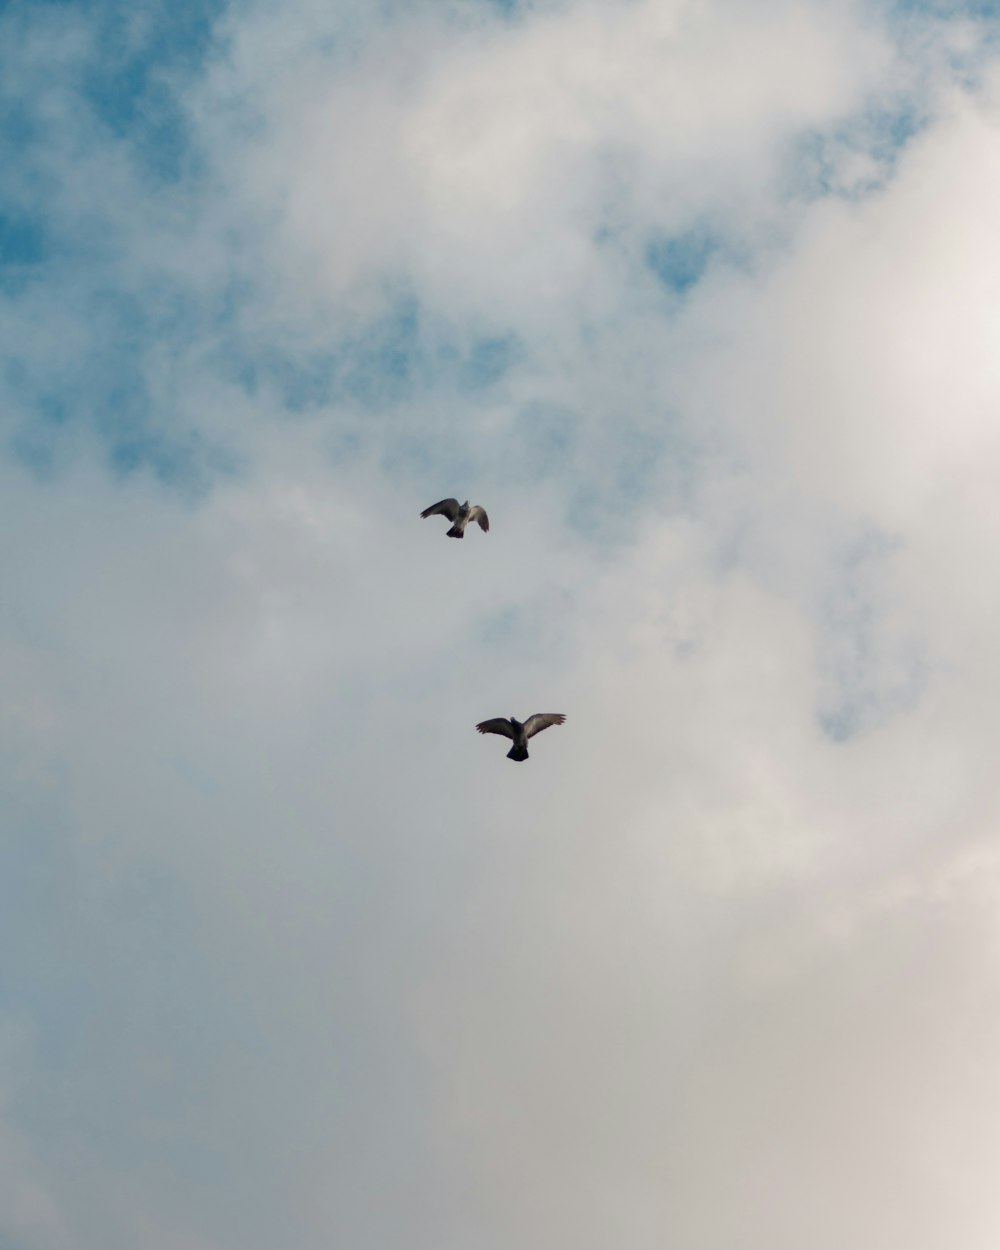 Tres pájaros volando bajo nubes blancas durante el día